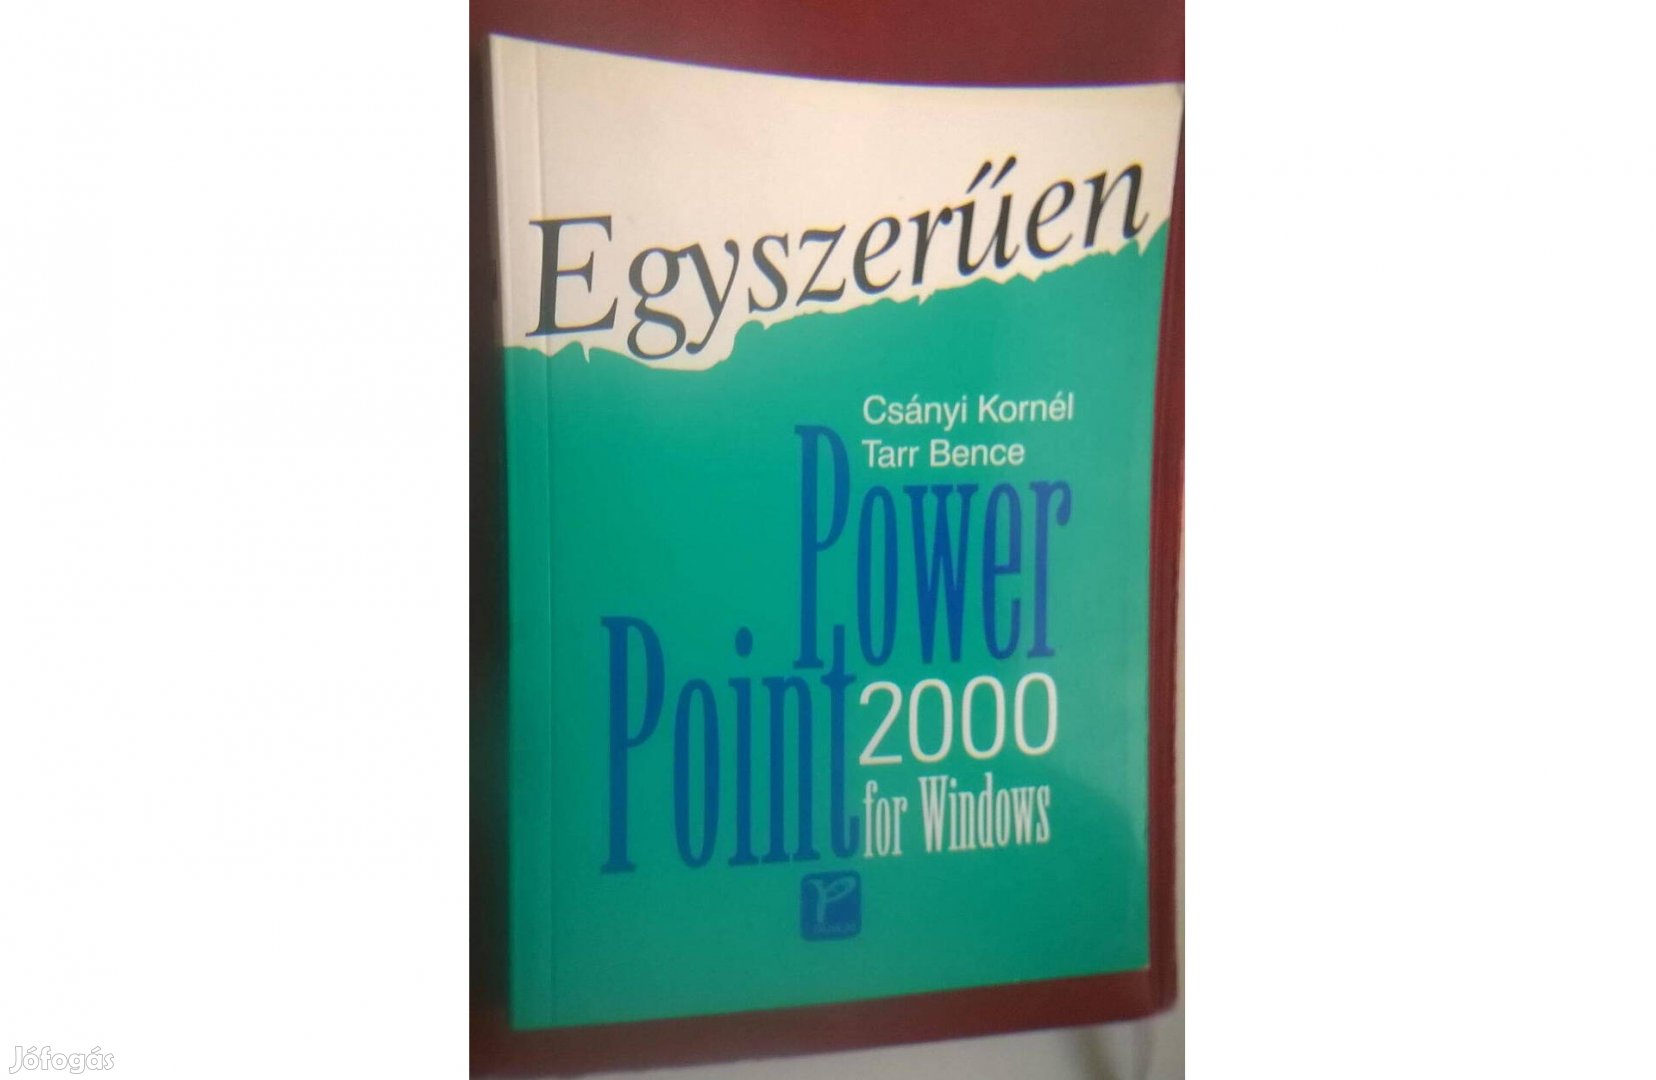 Egyszerűen , Power Point for Windows 2000 című könyv